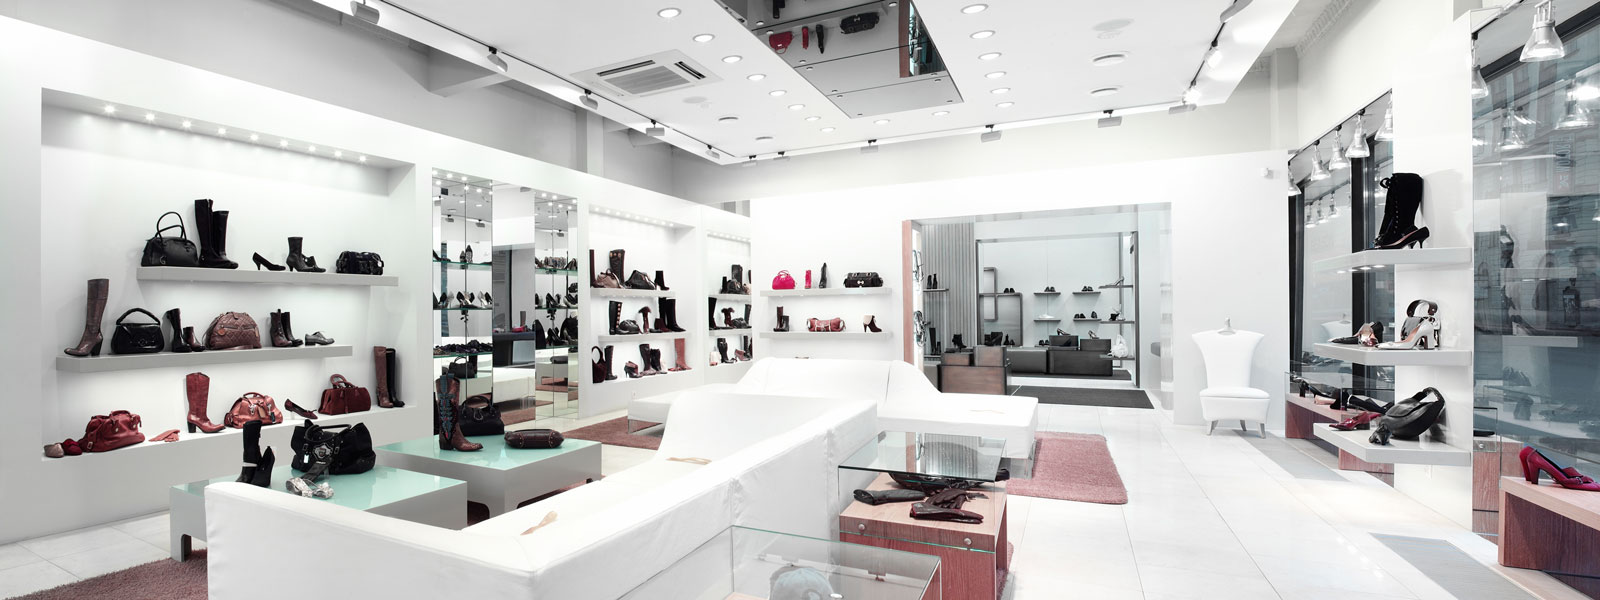 EIS POS gestionale per negozi, outlet e franchising di calzature, abbigliamento e accessori moda